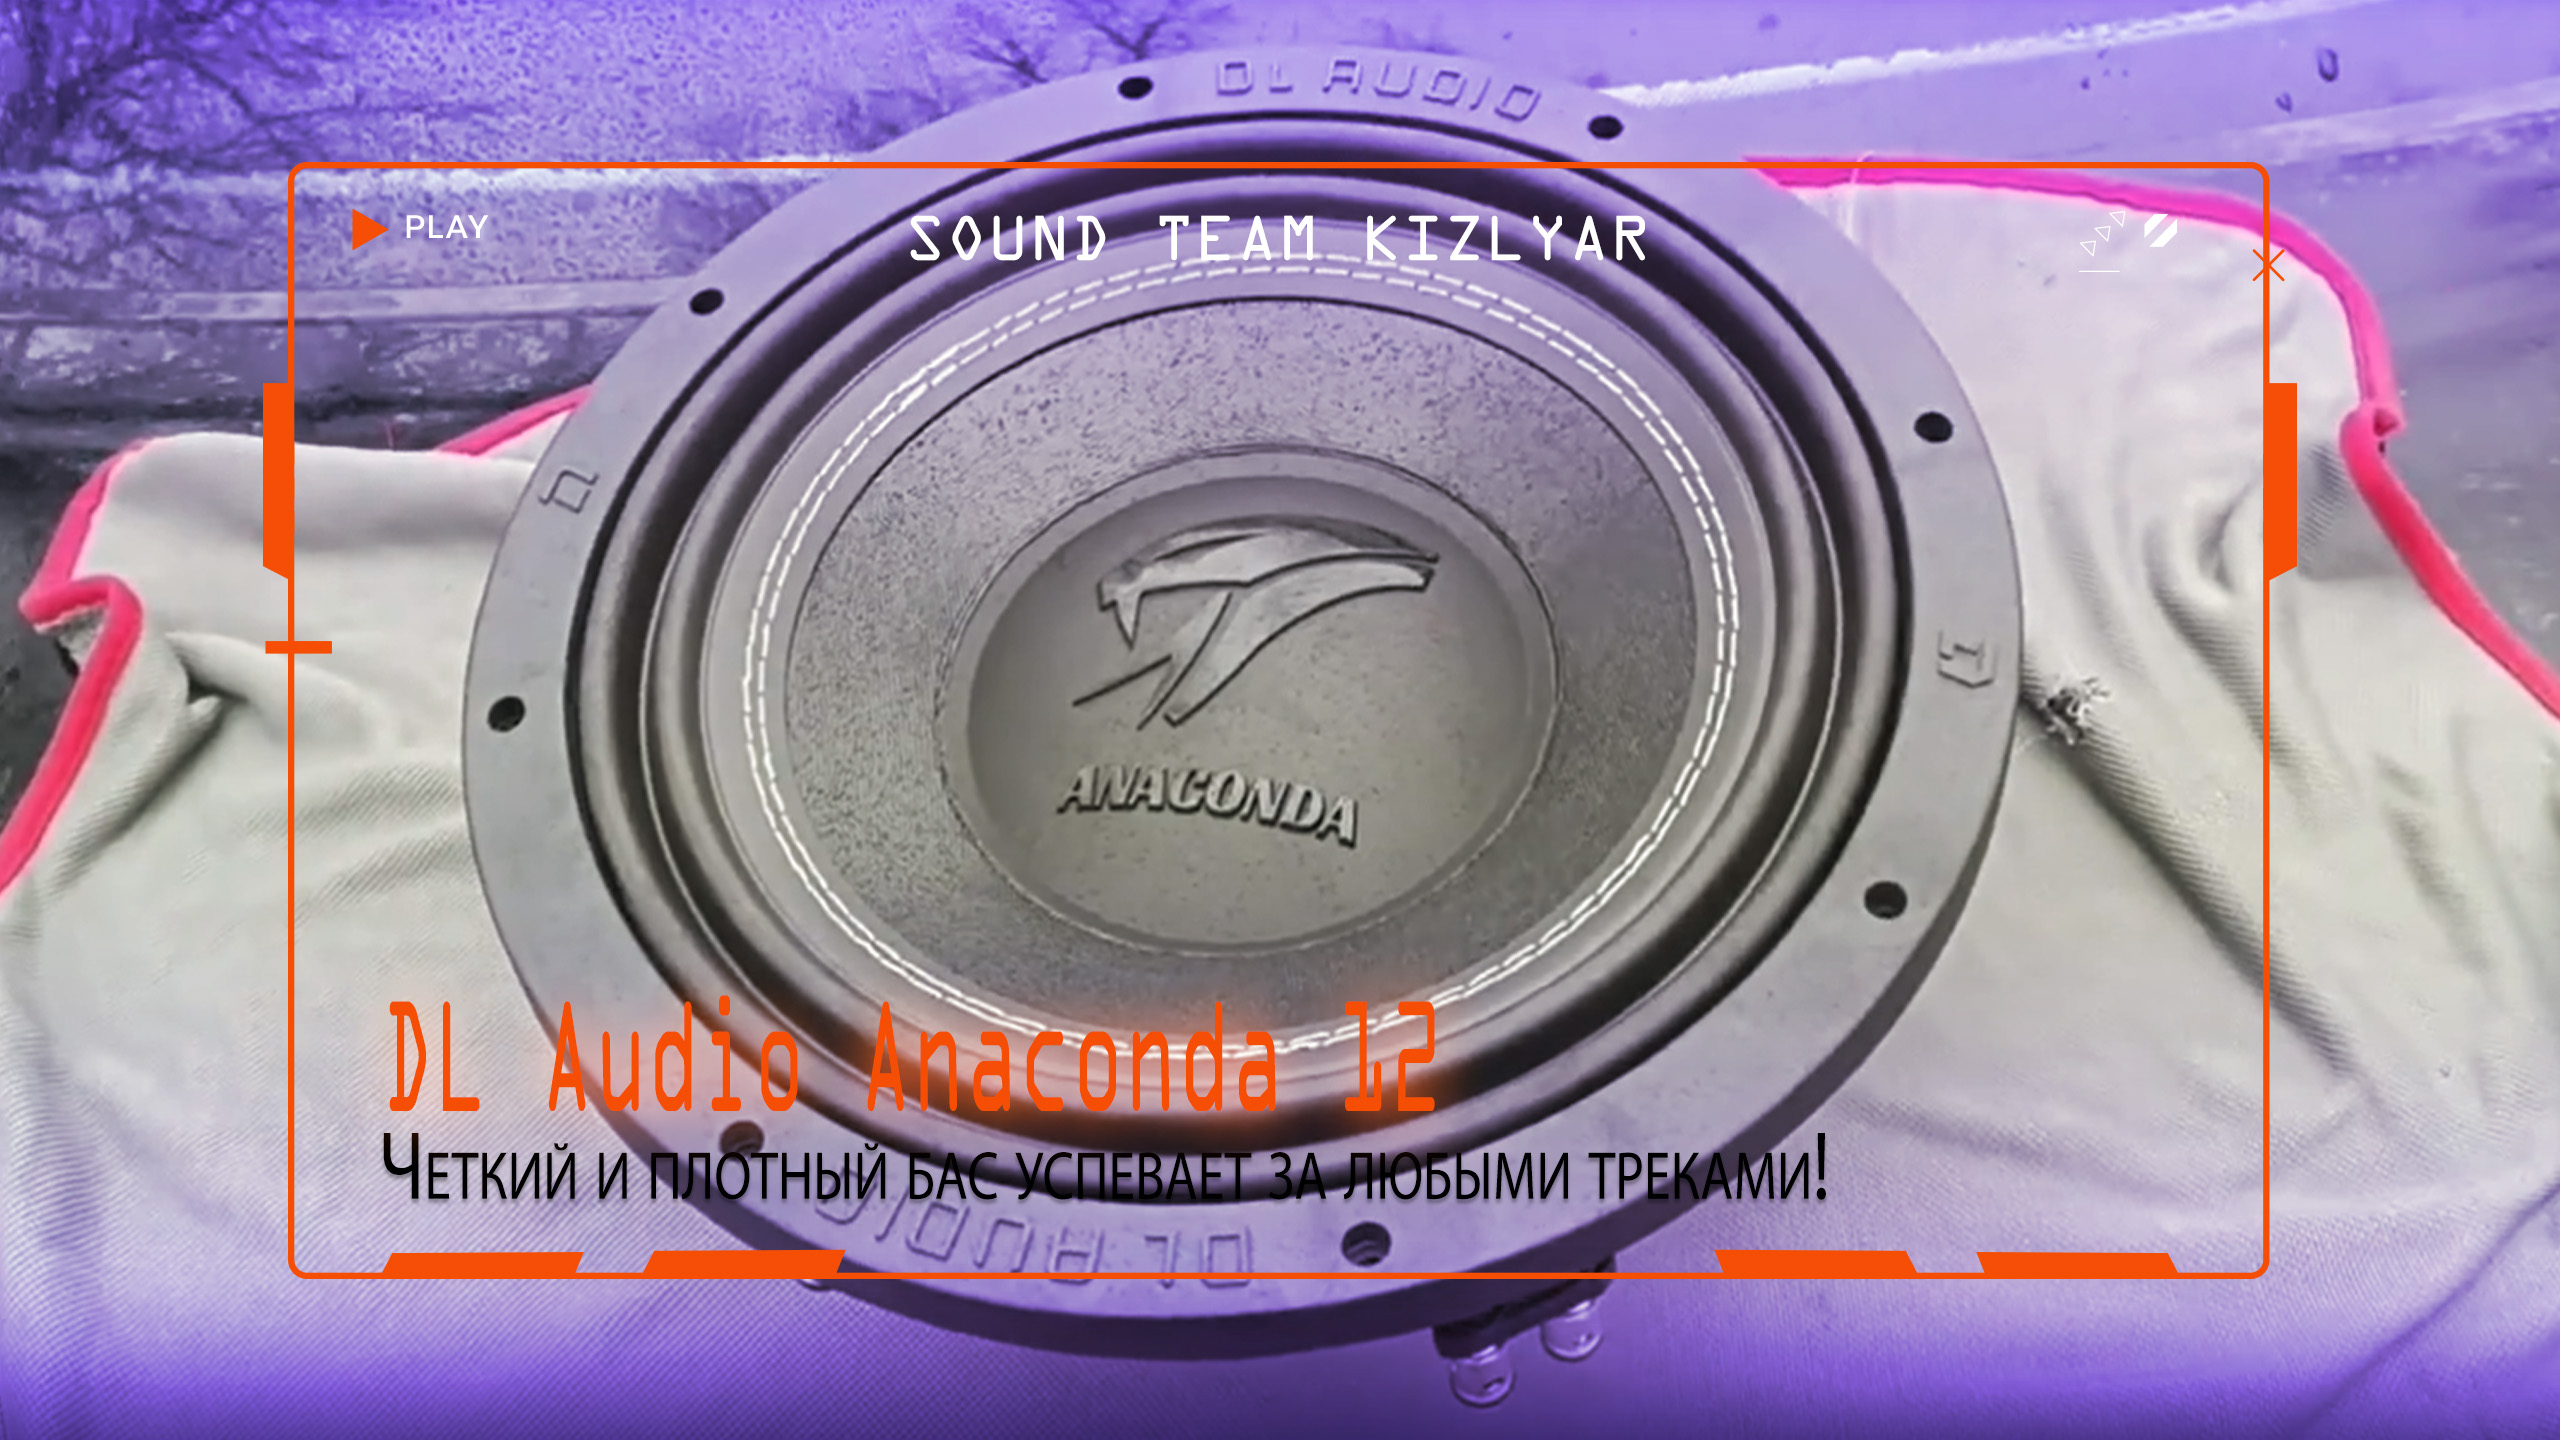 Сабвуфер на качество звучания! Четкий и плотный бас успевает за любыми треками! DL Audio Anaconda 12